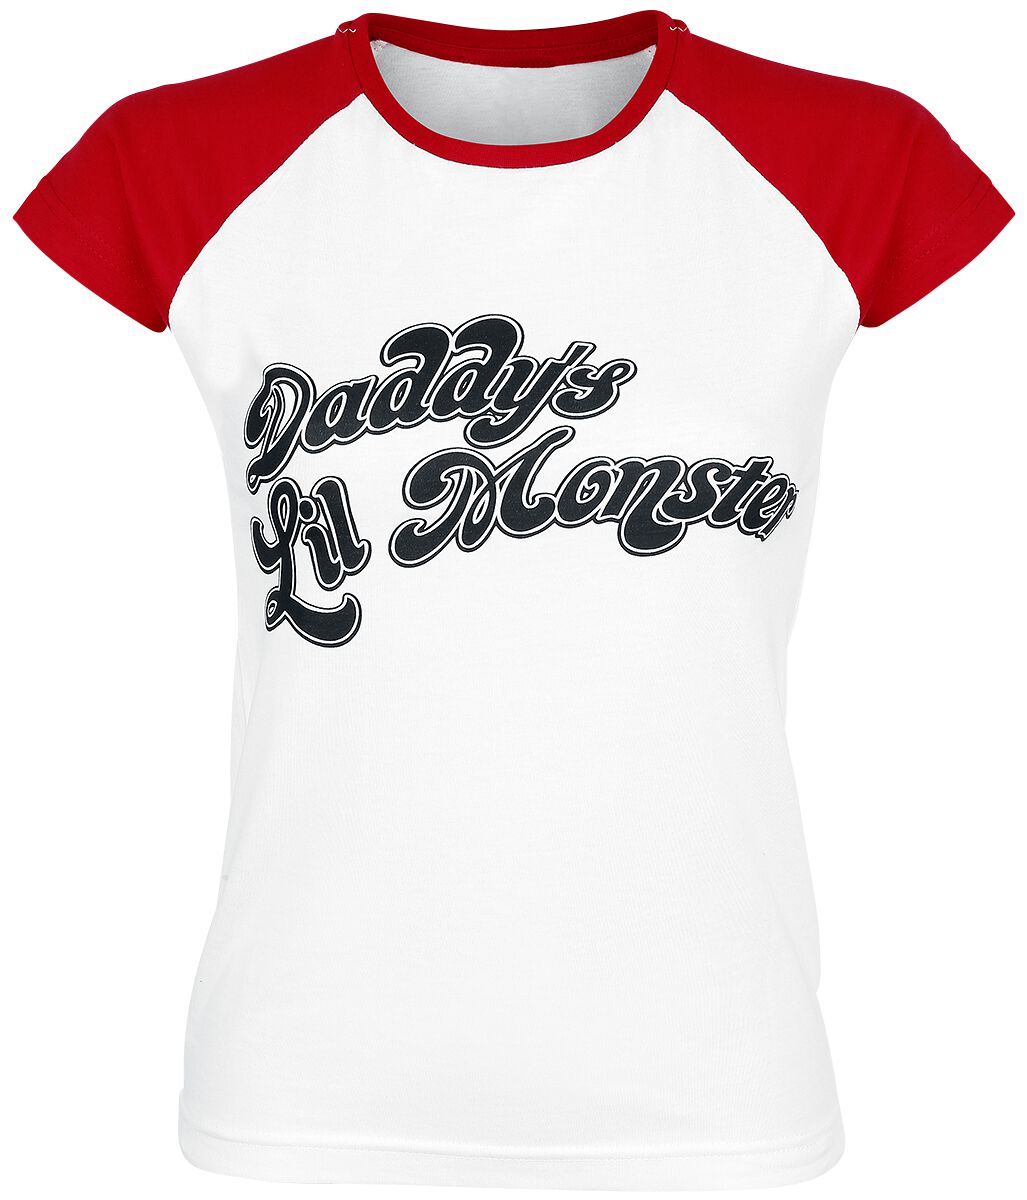 T-Shirt Manches courtes de Suicide Squad - Daddy's Lil' Monster - S à XXL - pour Femme - blanc/rouge